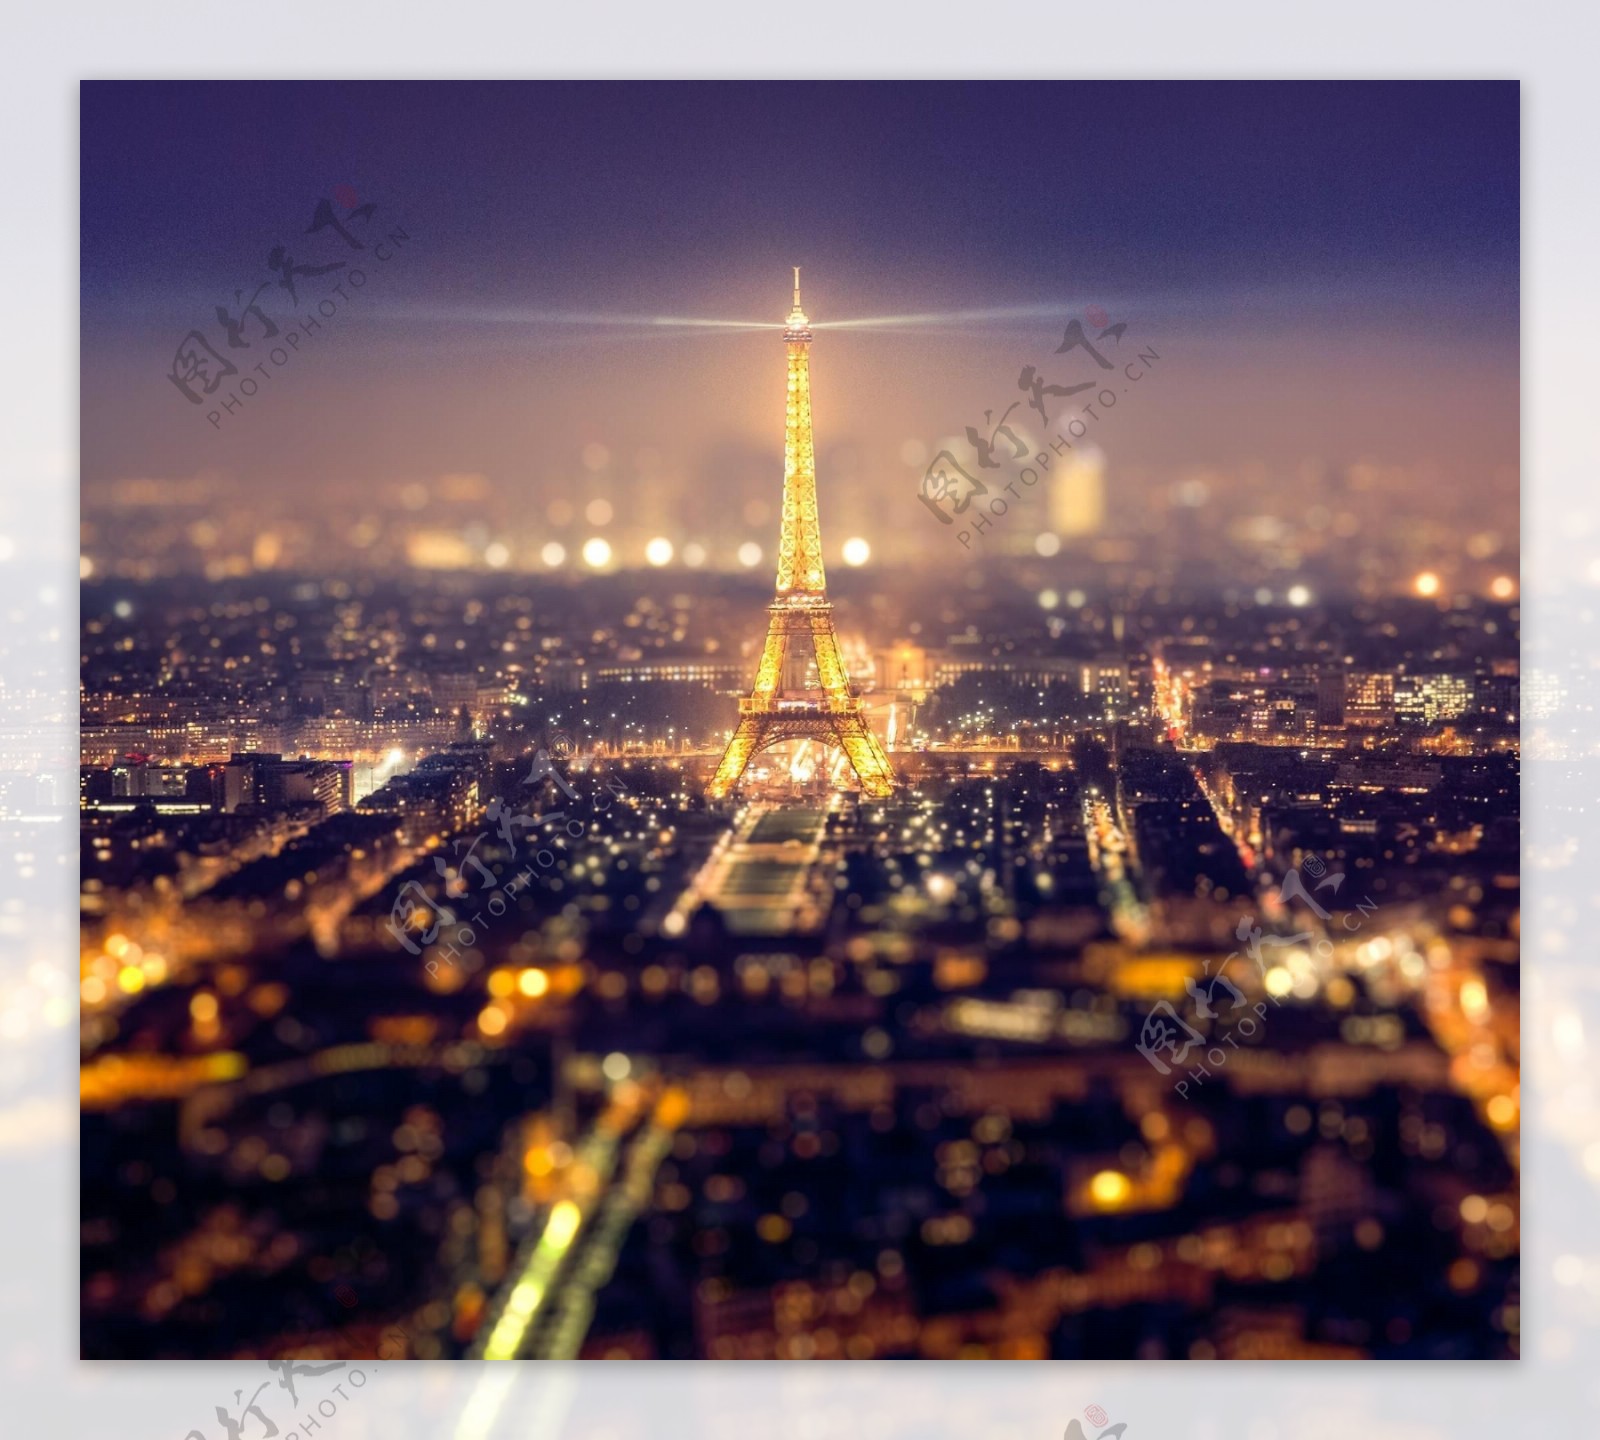 远眺巴黎埃菲尔铁塔夜景